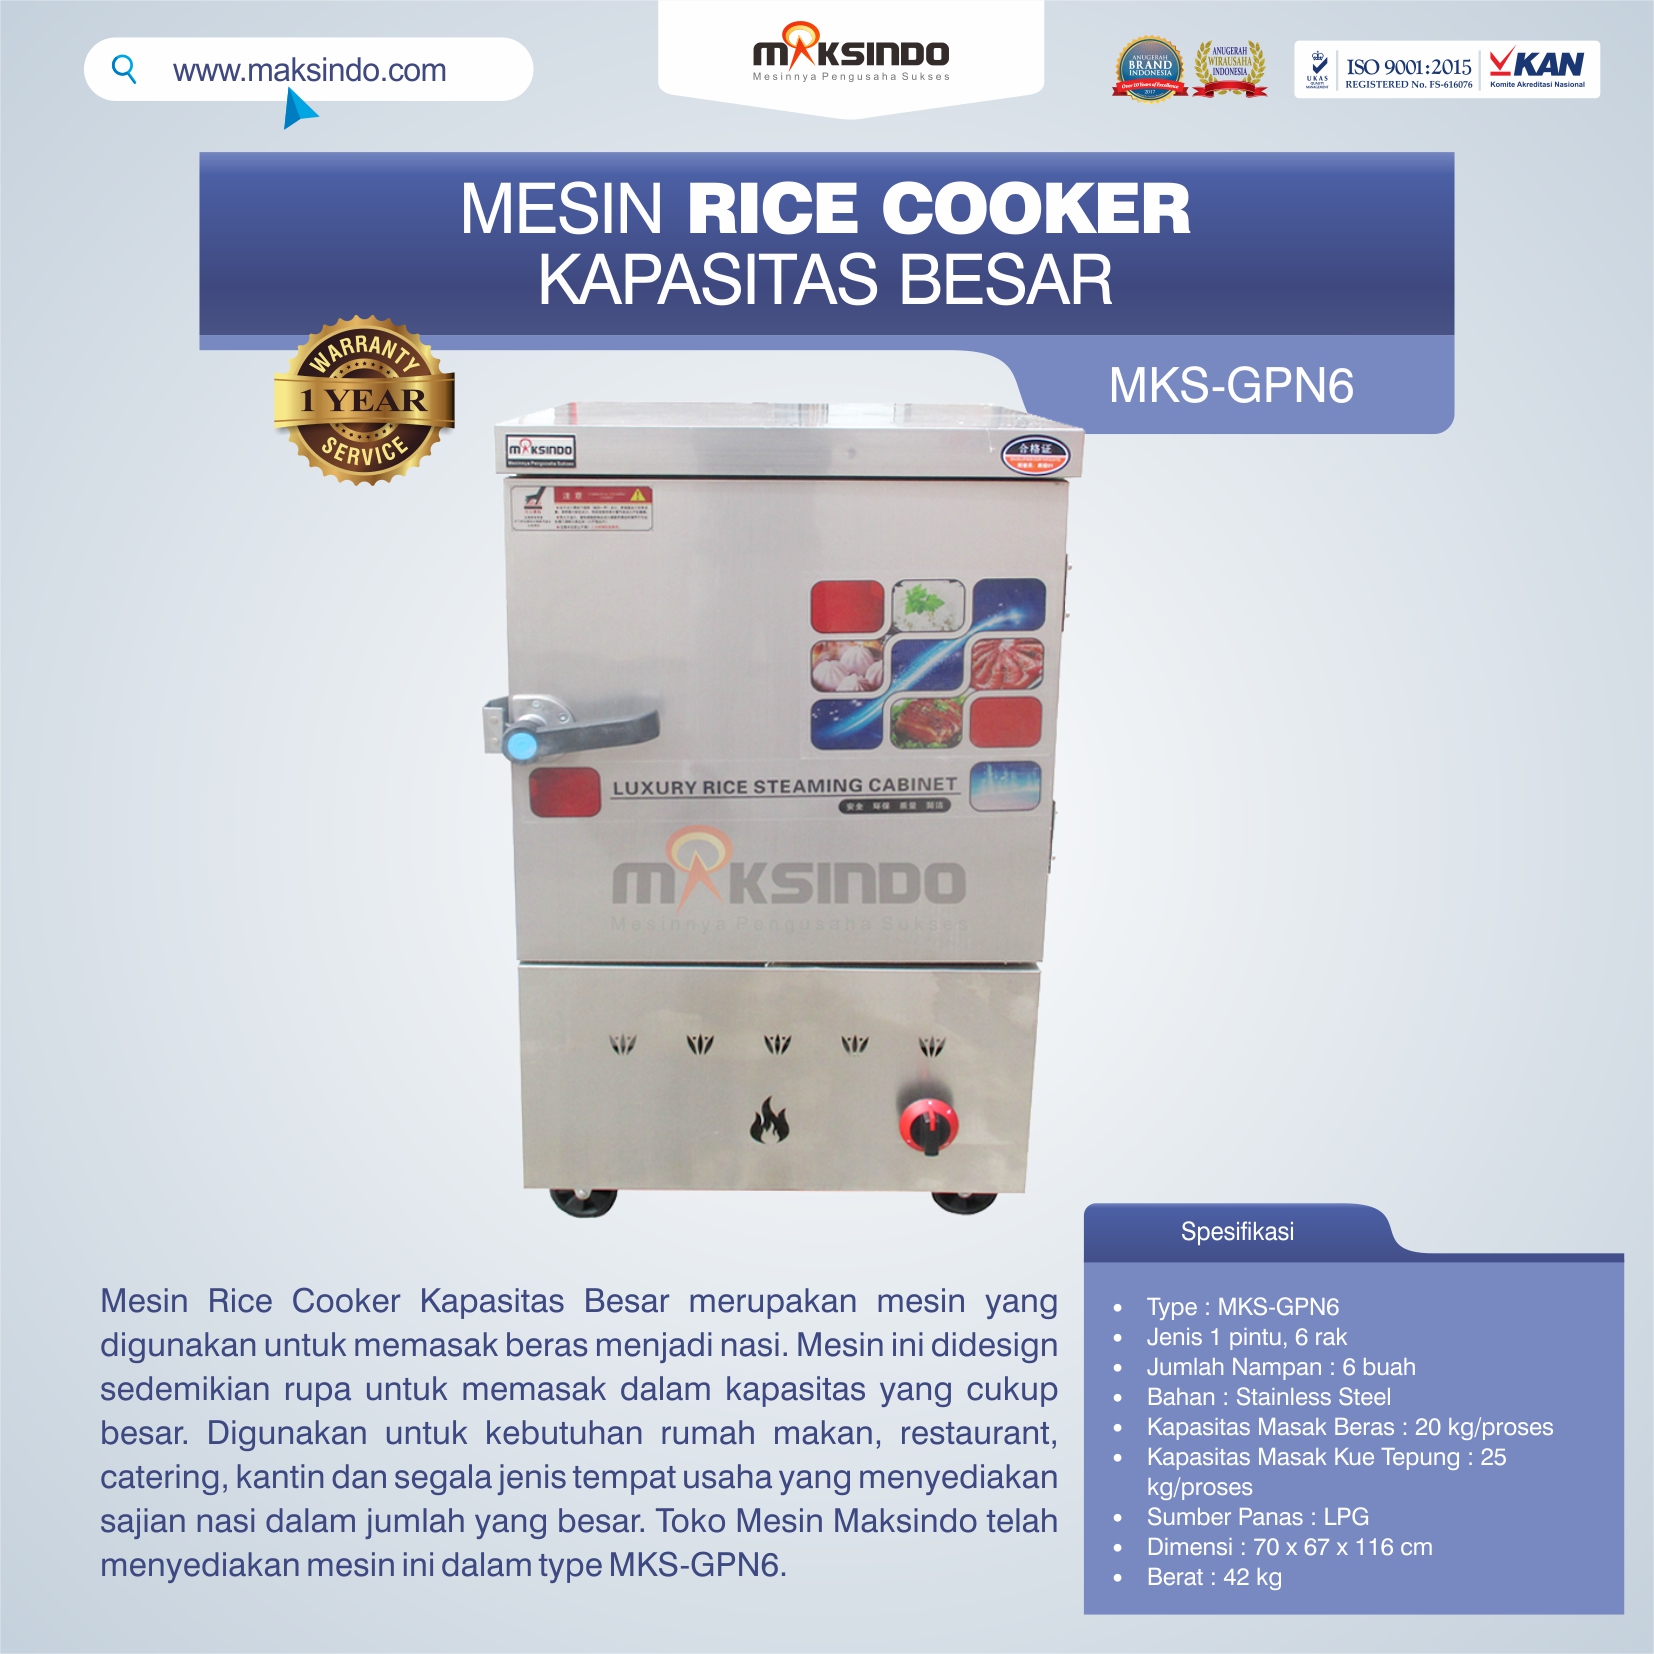 Jual Mesin Rice Cooker Kapasitas Besar MKS-GPN6 di Palembang